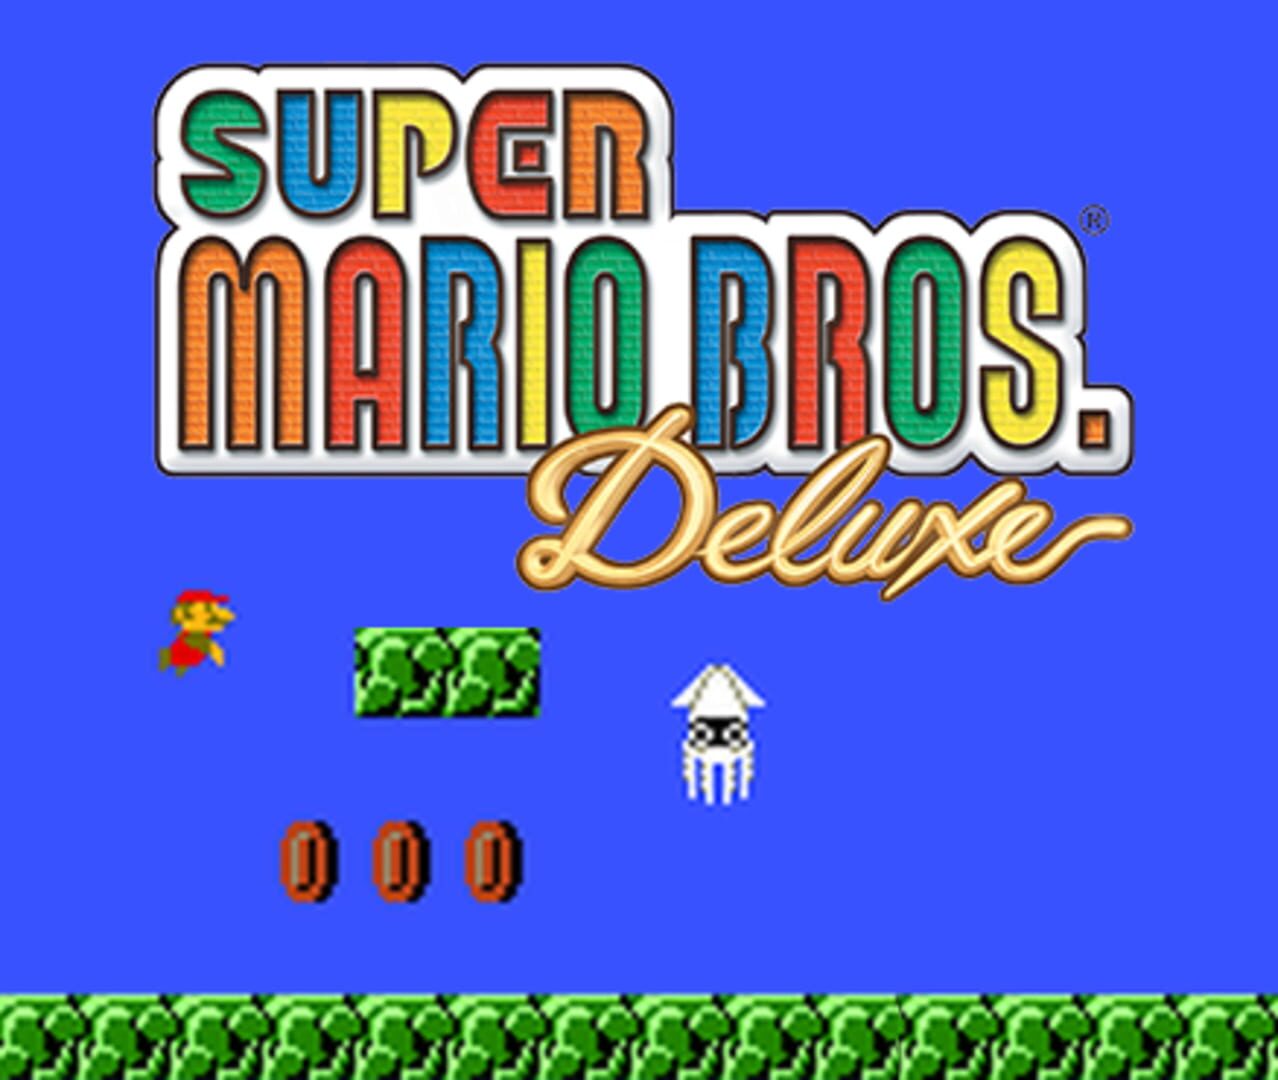 Arte - Super Mario Bros. Deluxe